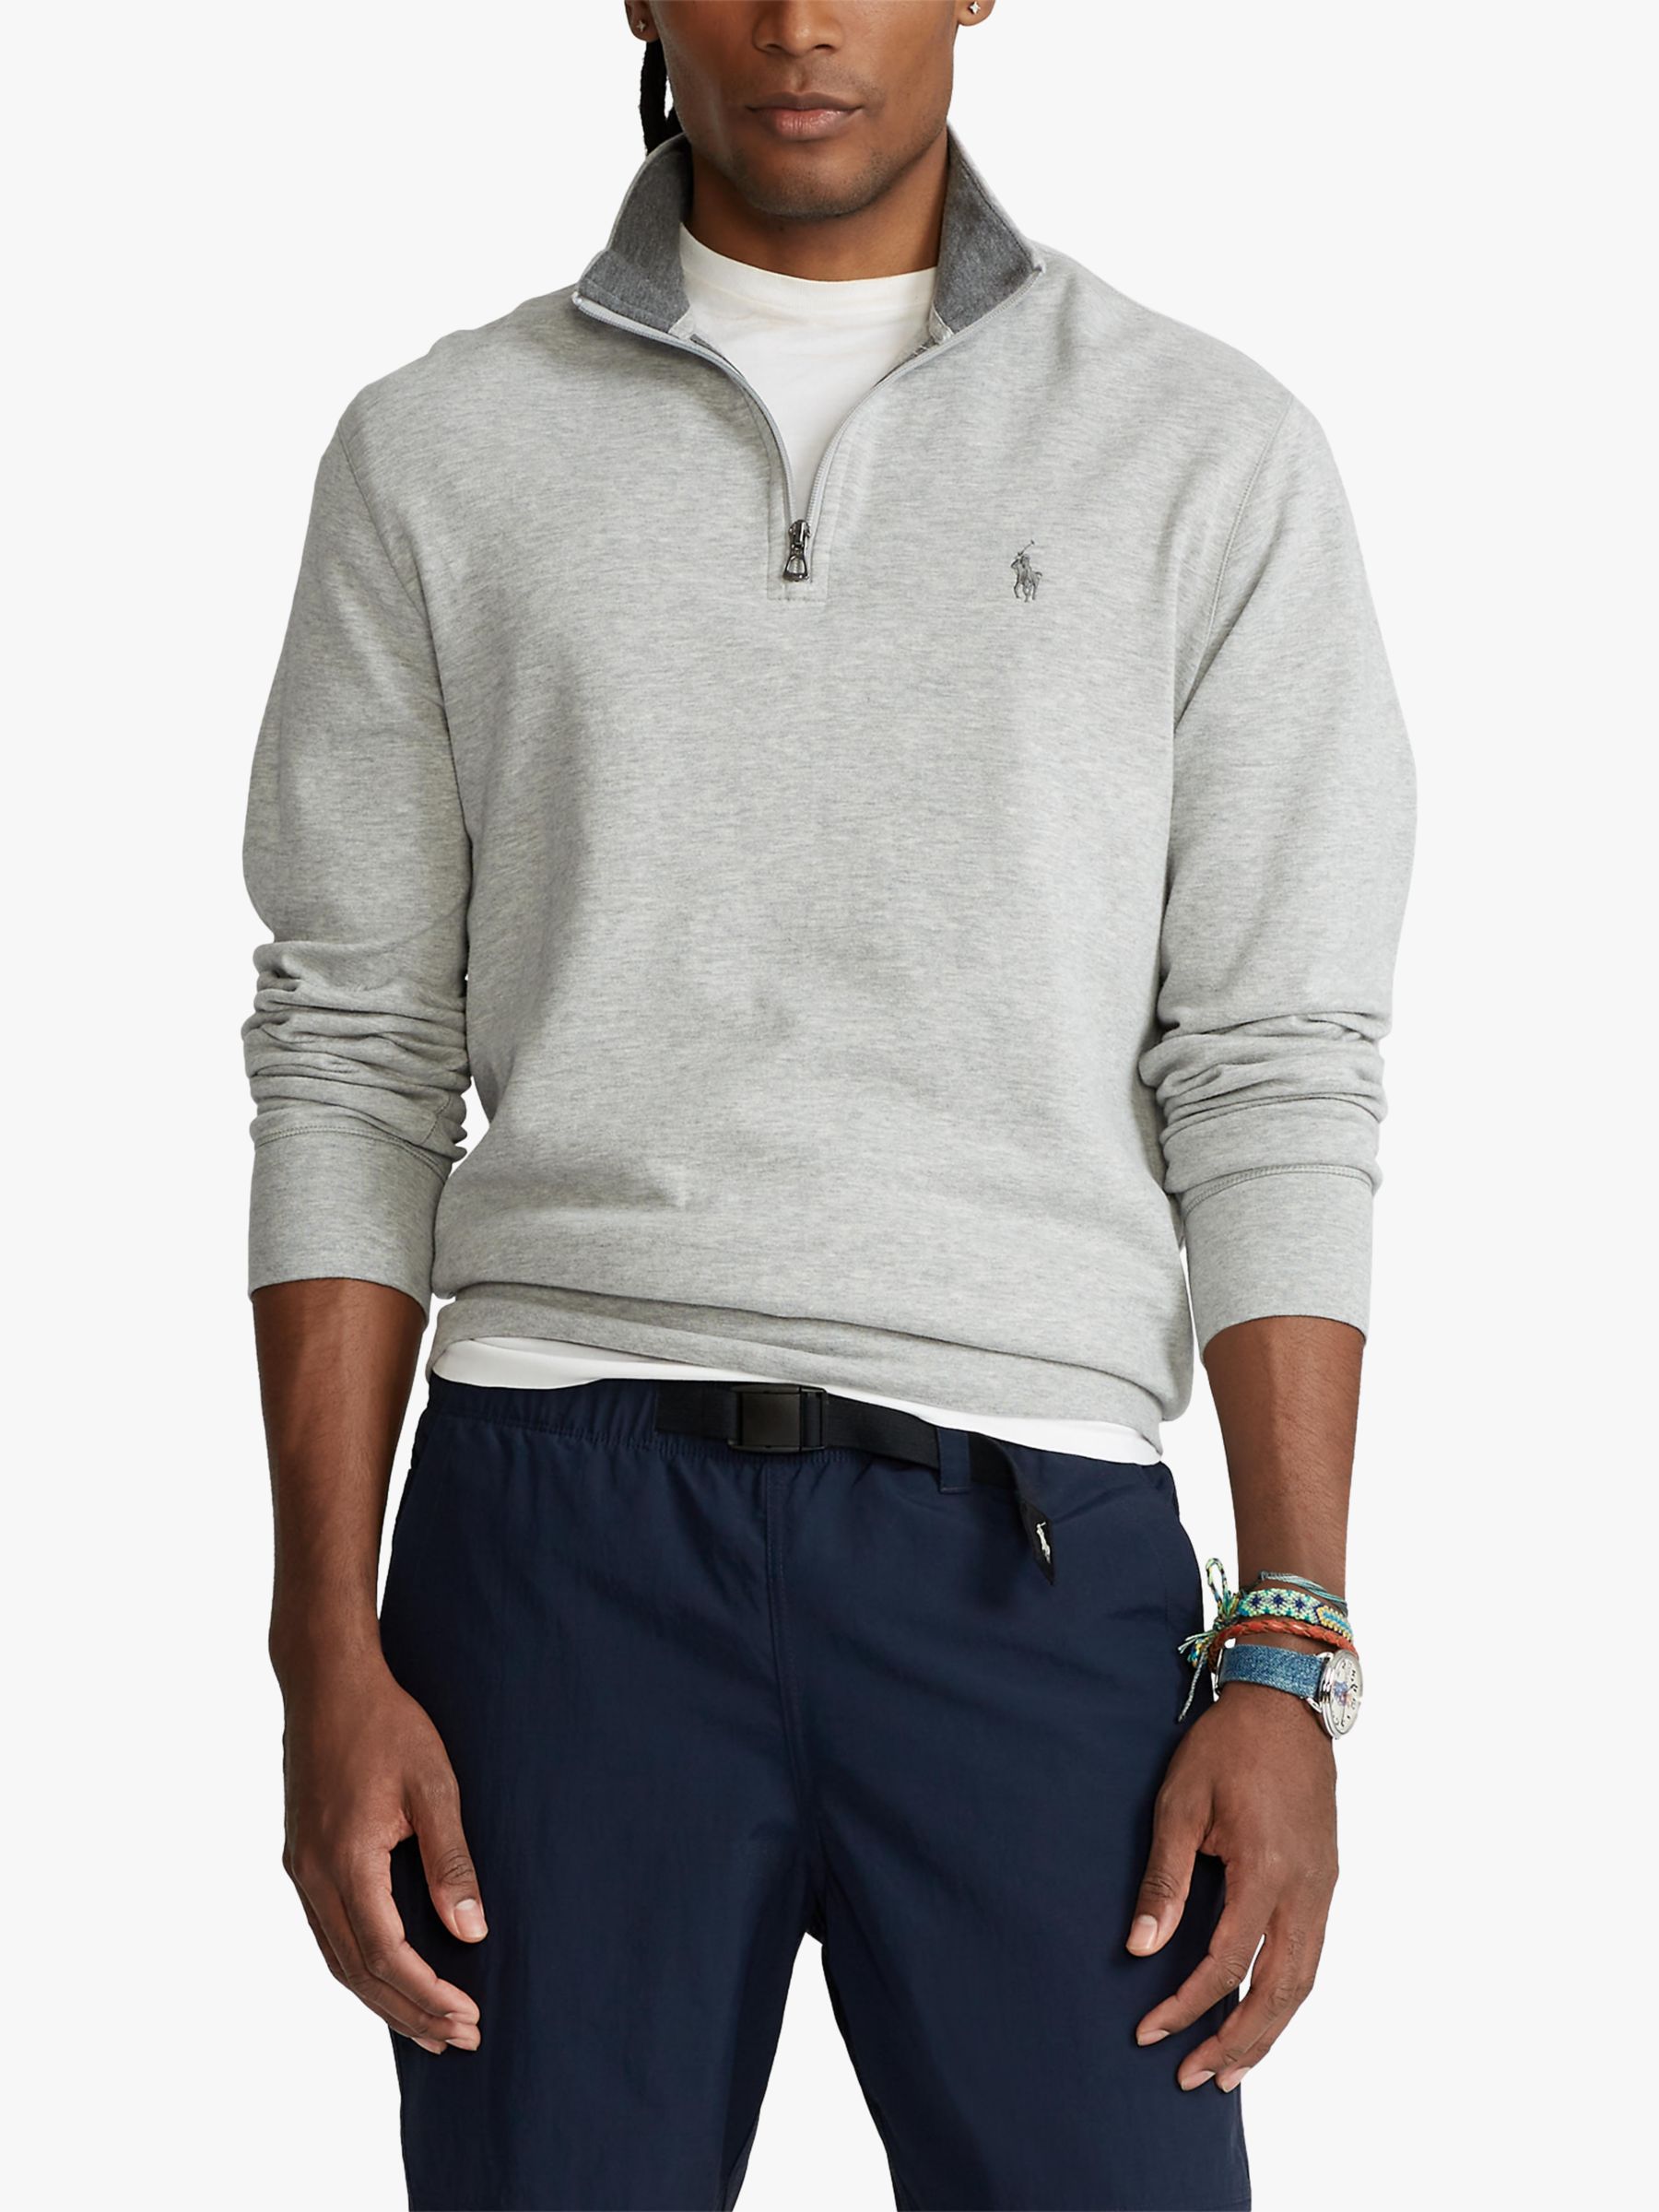 Men's Ralph Lauren Sweatshirts & Hoodies | John Lewis & Partners